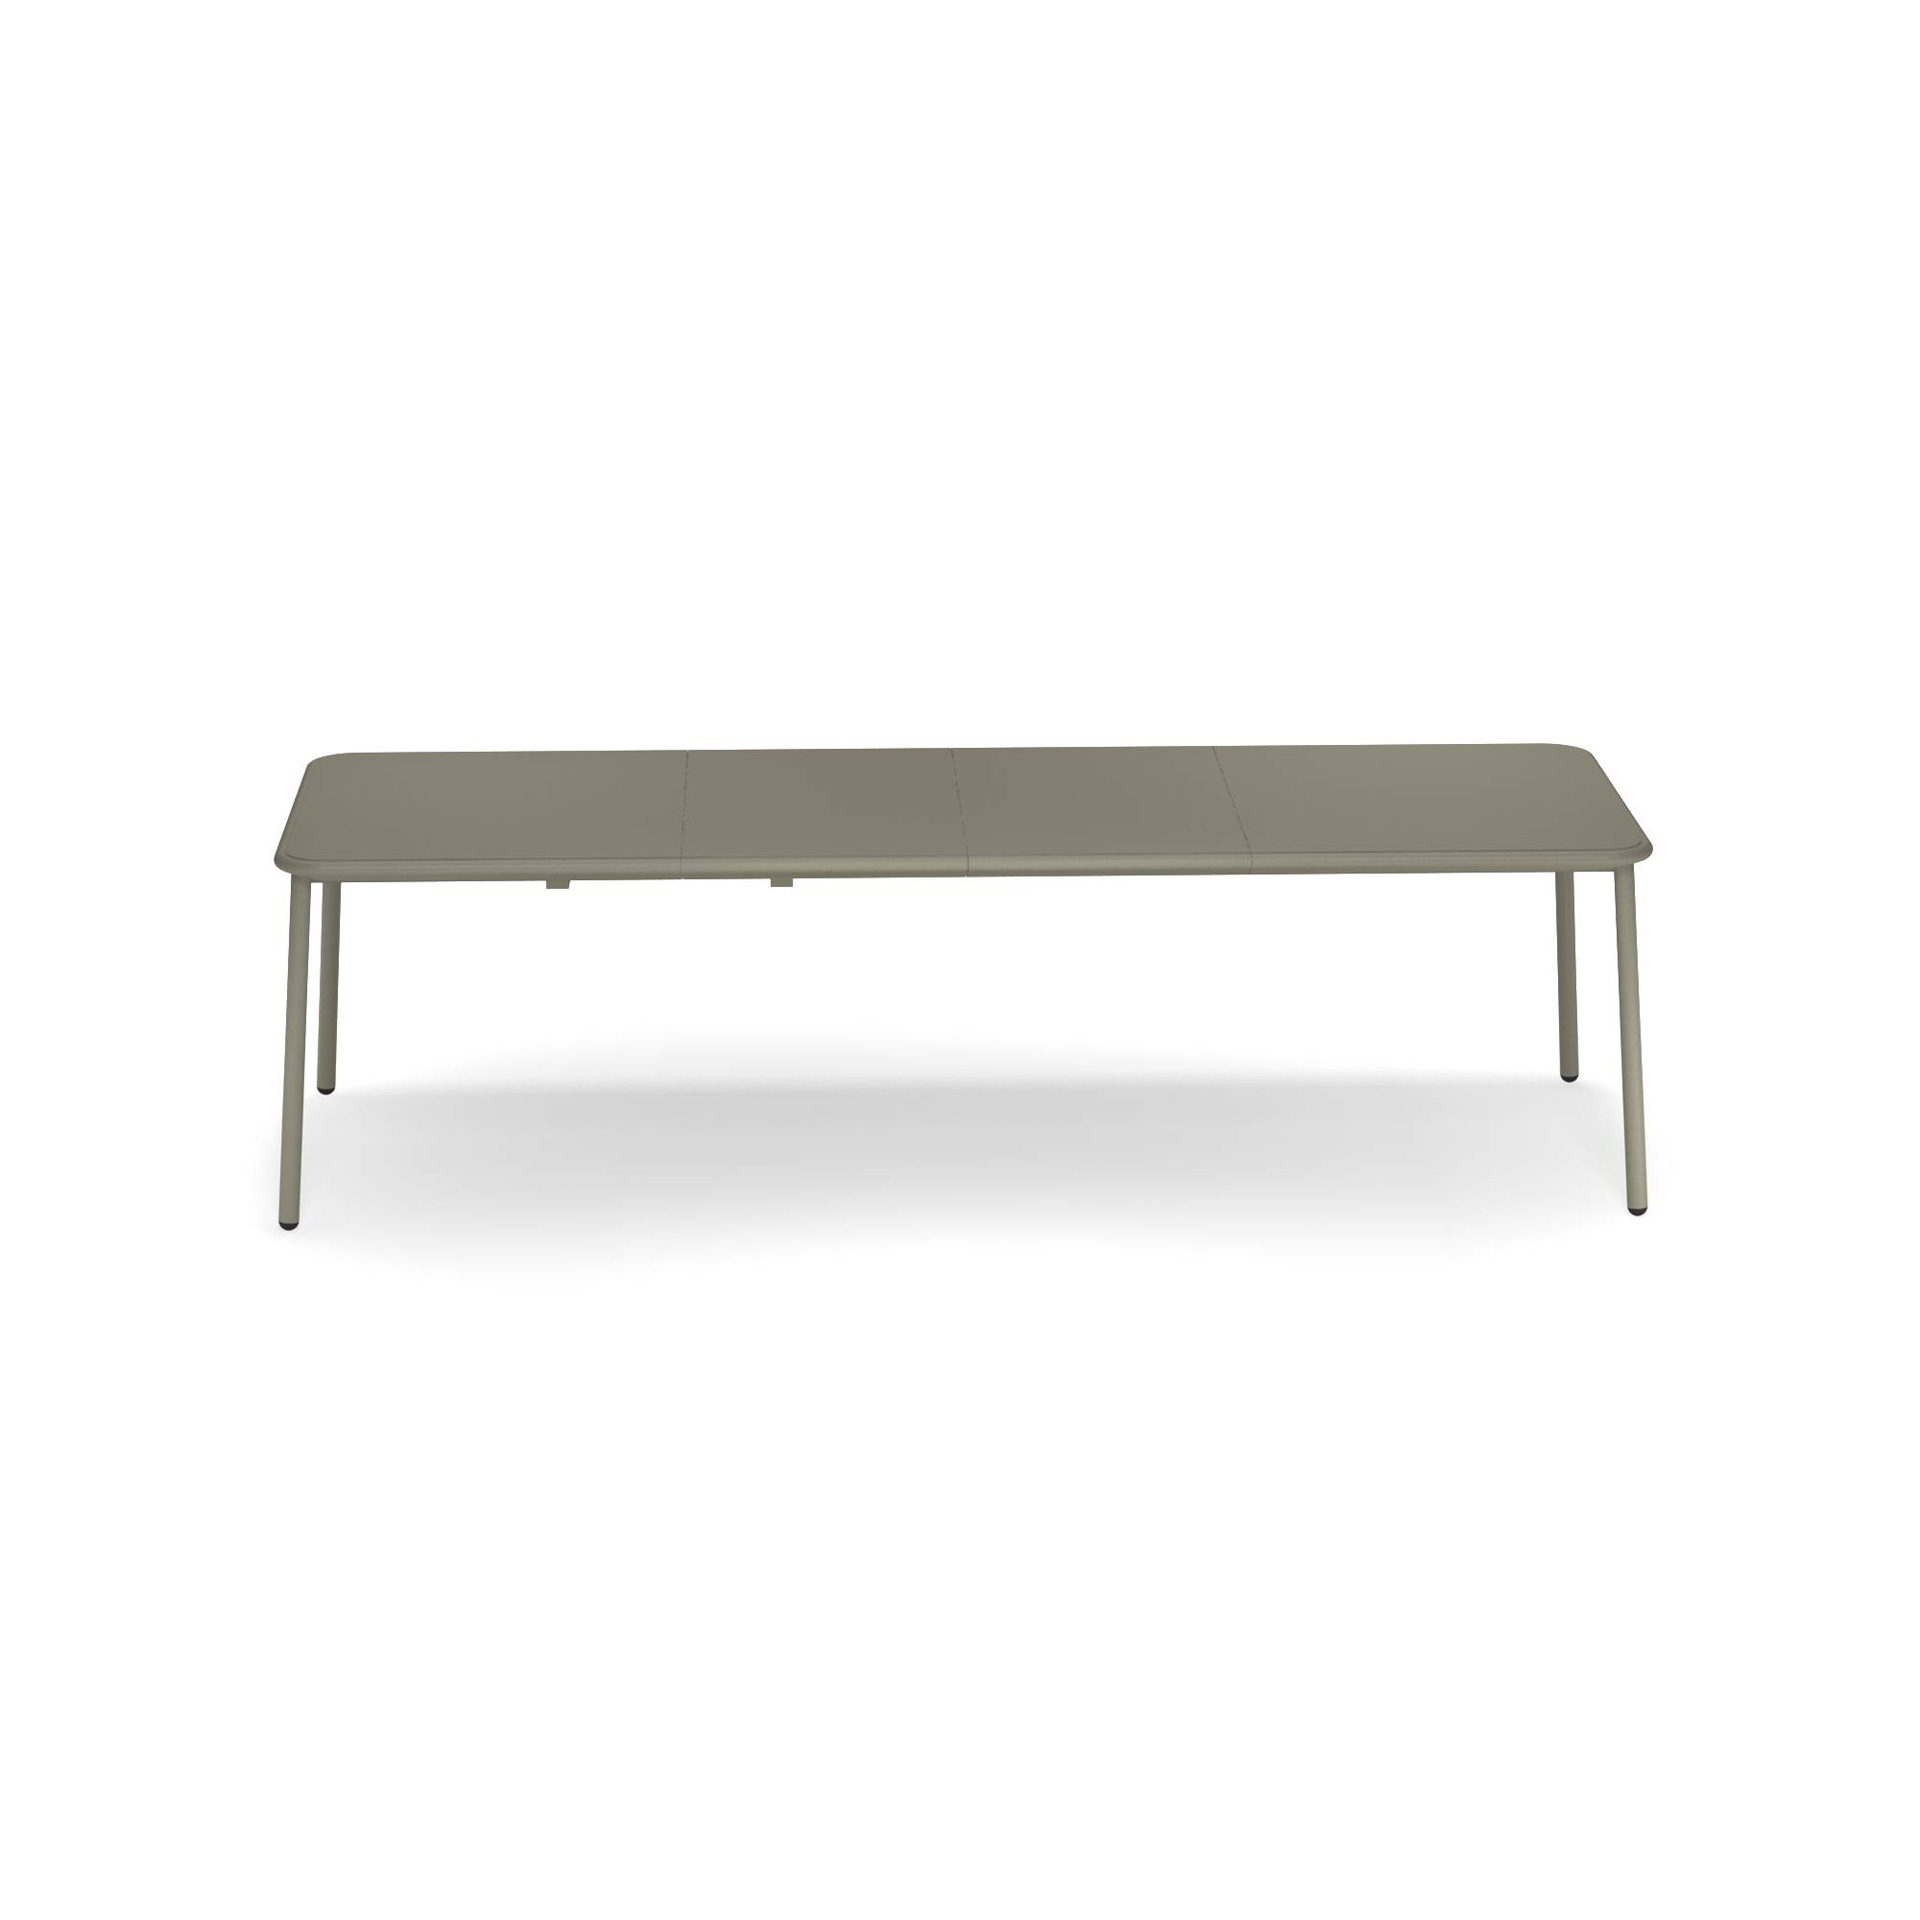 Yard ausziehbarer Tisch mit Aluminiumplatte